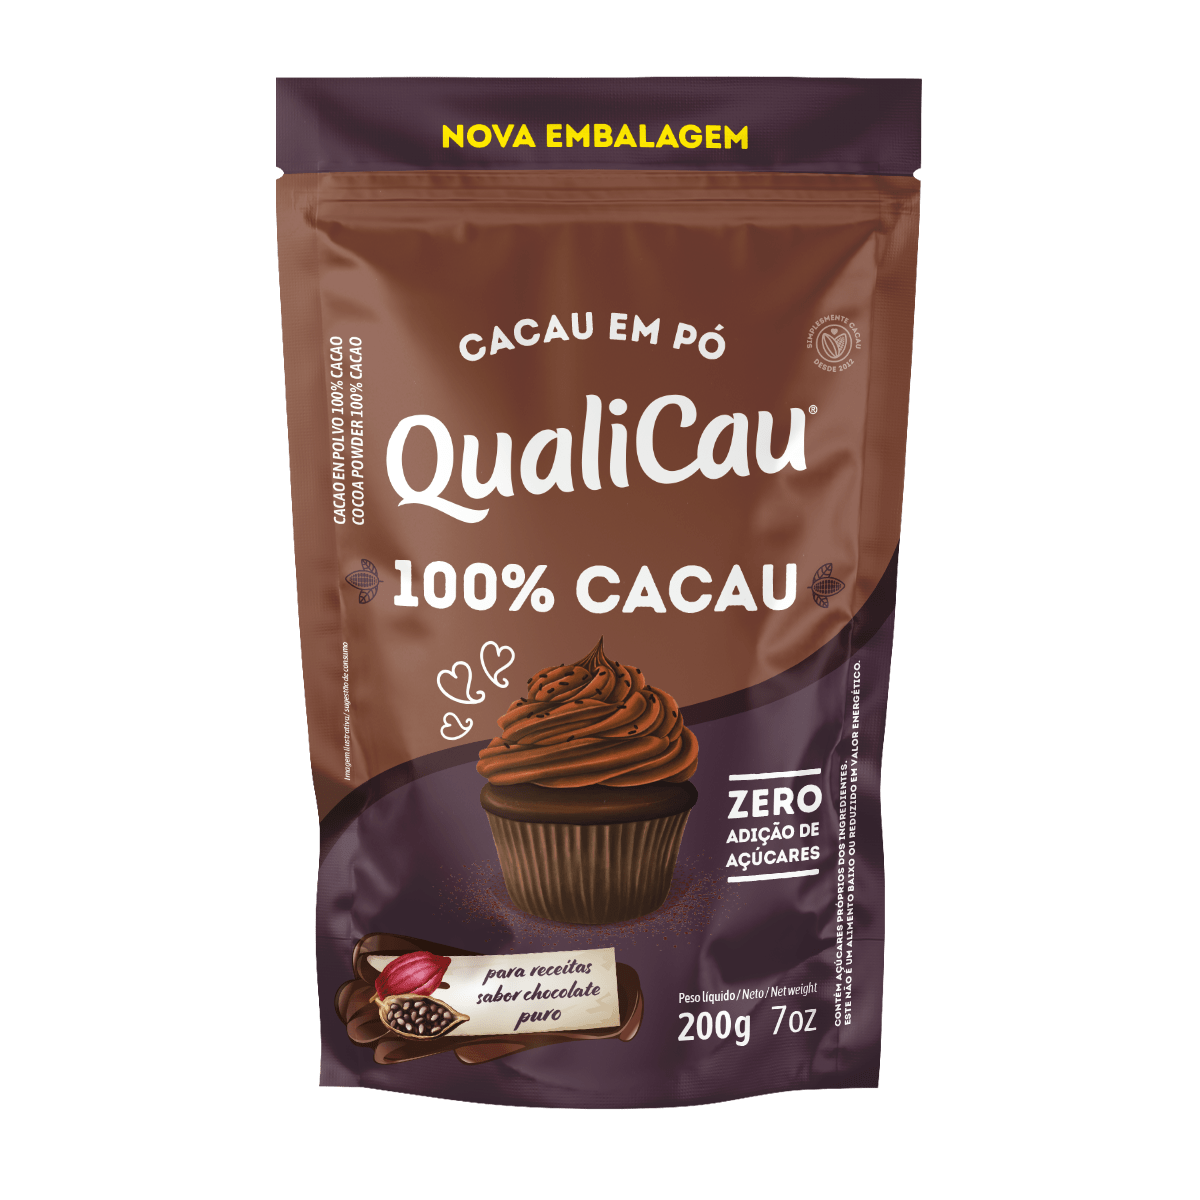 QUALICOCO - Qualicau | Cocoa Powder - 200g - FINAL SALE - EXPIRED or CLOSE TO EXPIRY